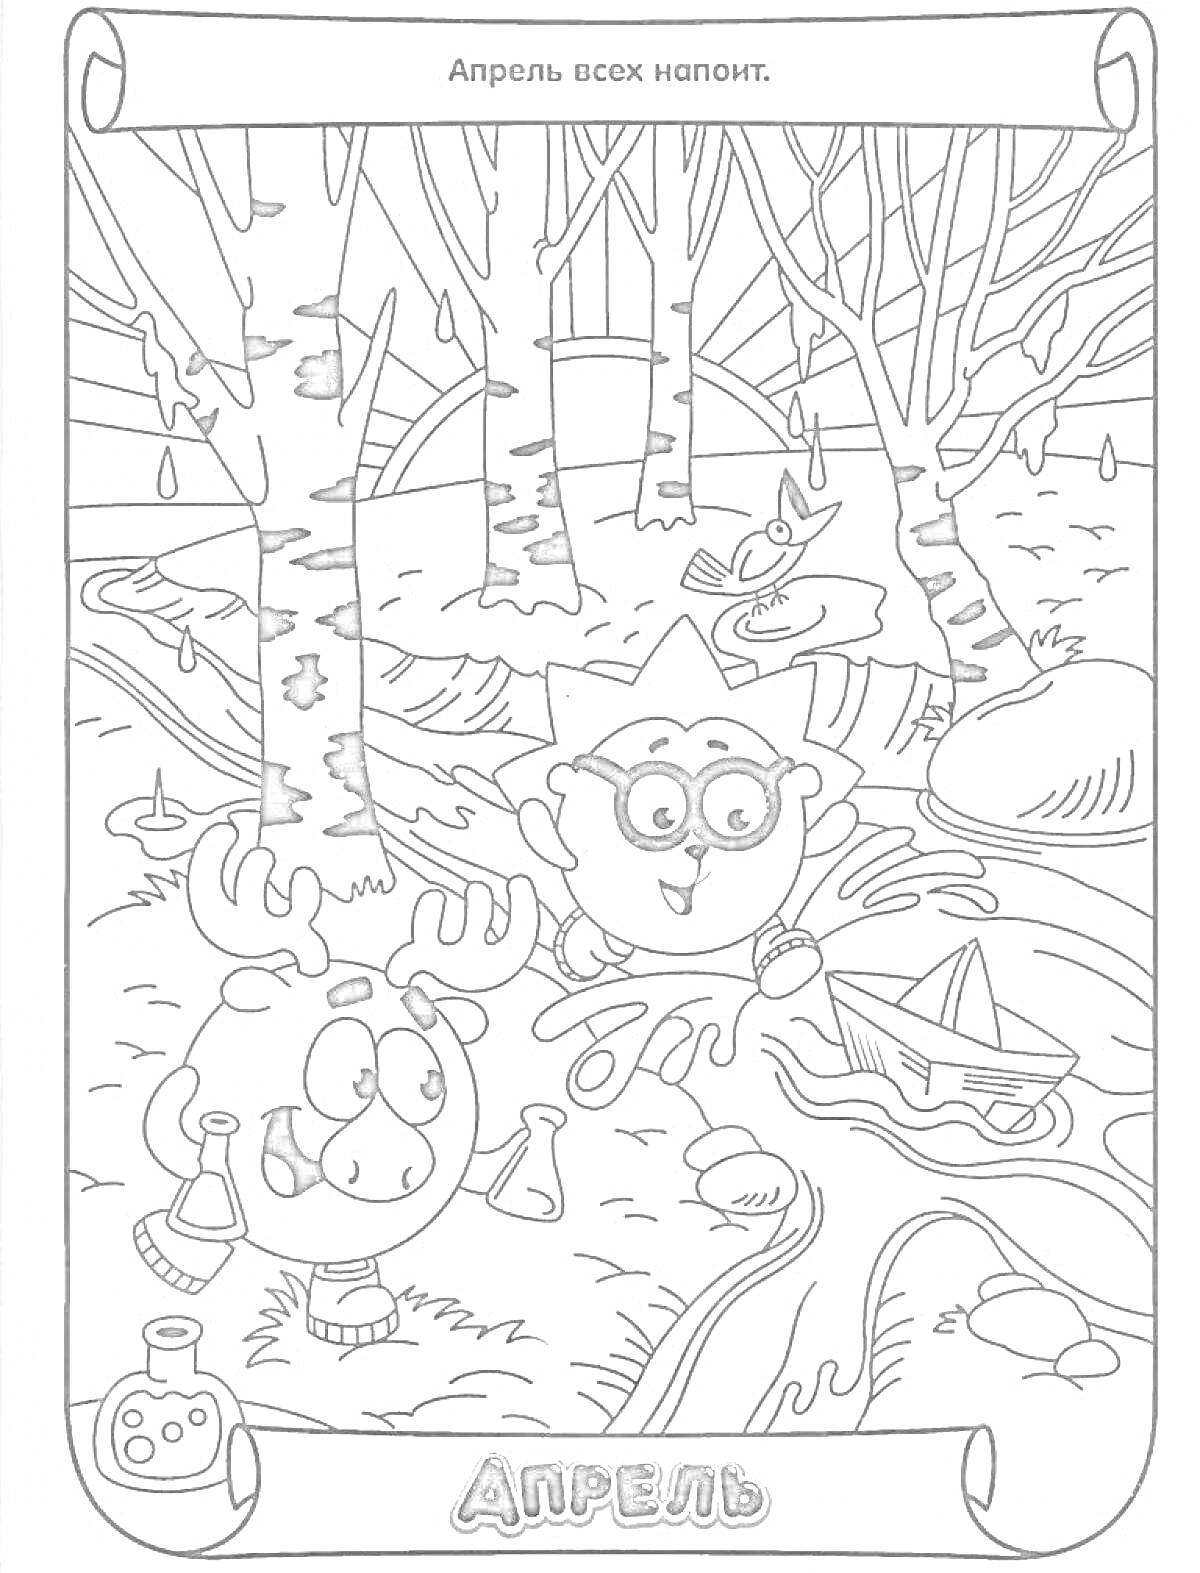 Раскраска Два персонажа гуляют весной, с лужами, бутылочками, спасательным кругом и лодкой на озере в окружении деревьев и березки.